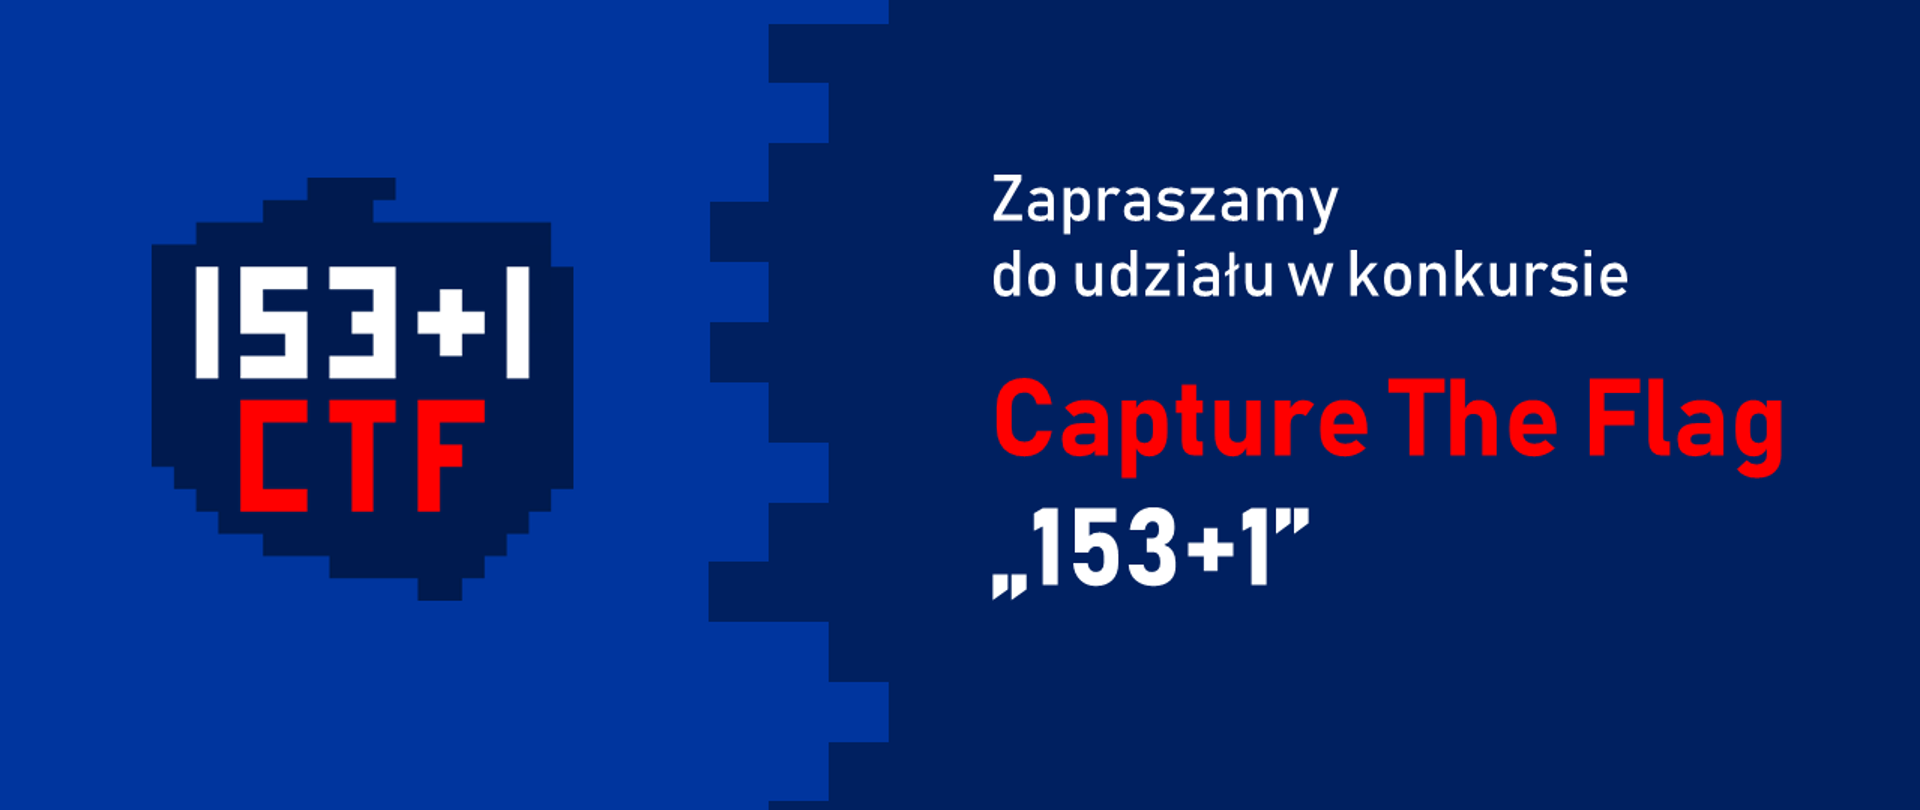 Napis na granatowym tle "Zapraszamy do udziału w konkursie Capture The Flag „153+1”